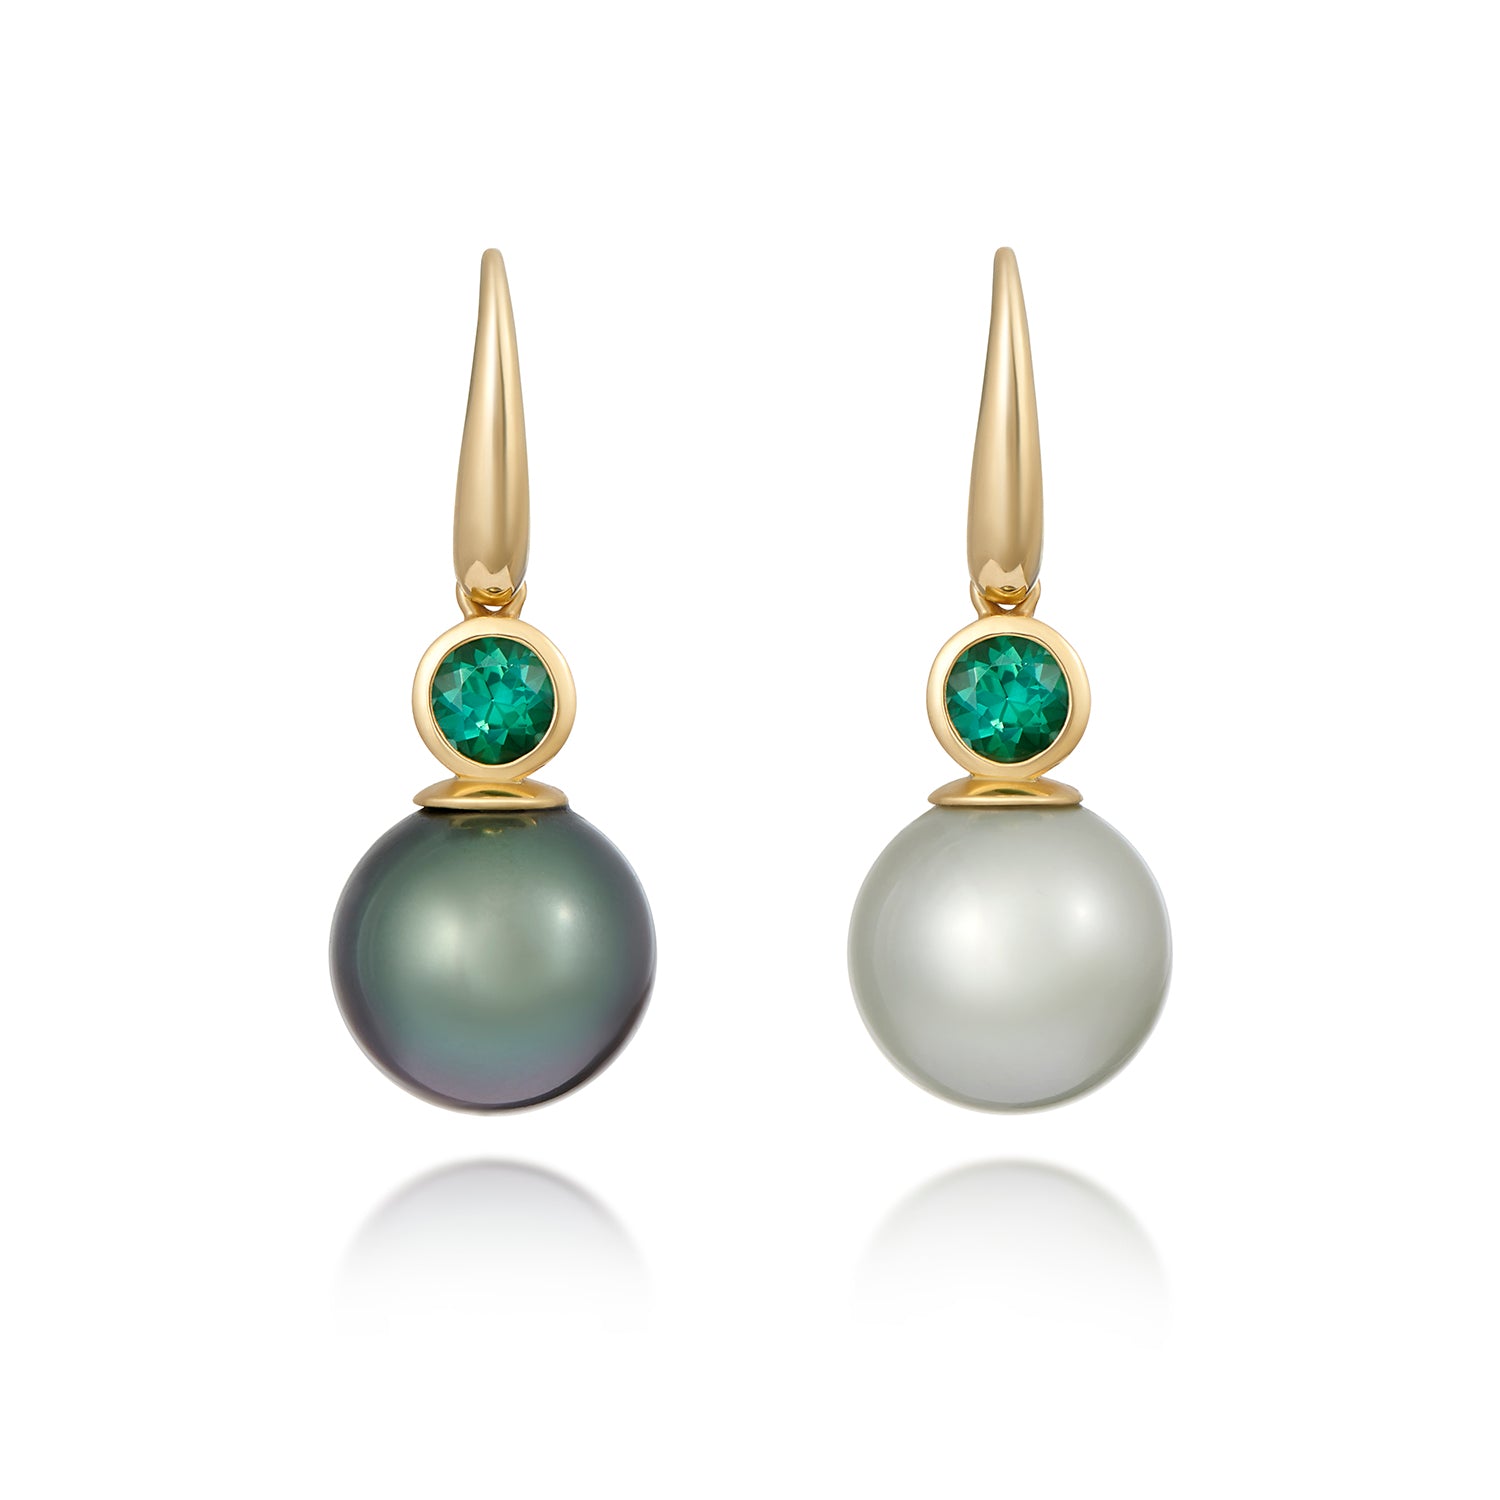 Bespoke Jewellery | Gemstone Jewellery | Minka Jewels